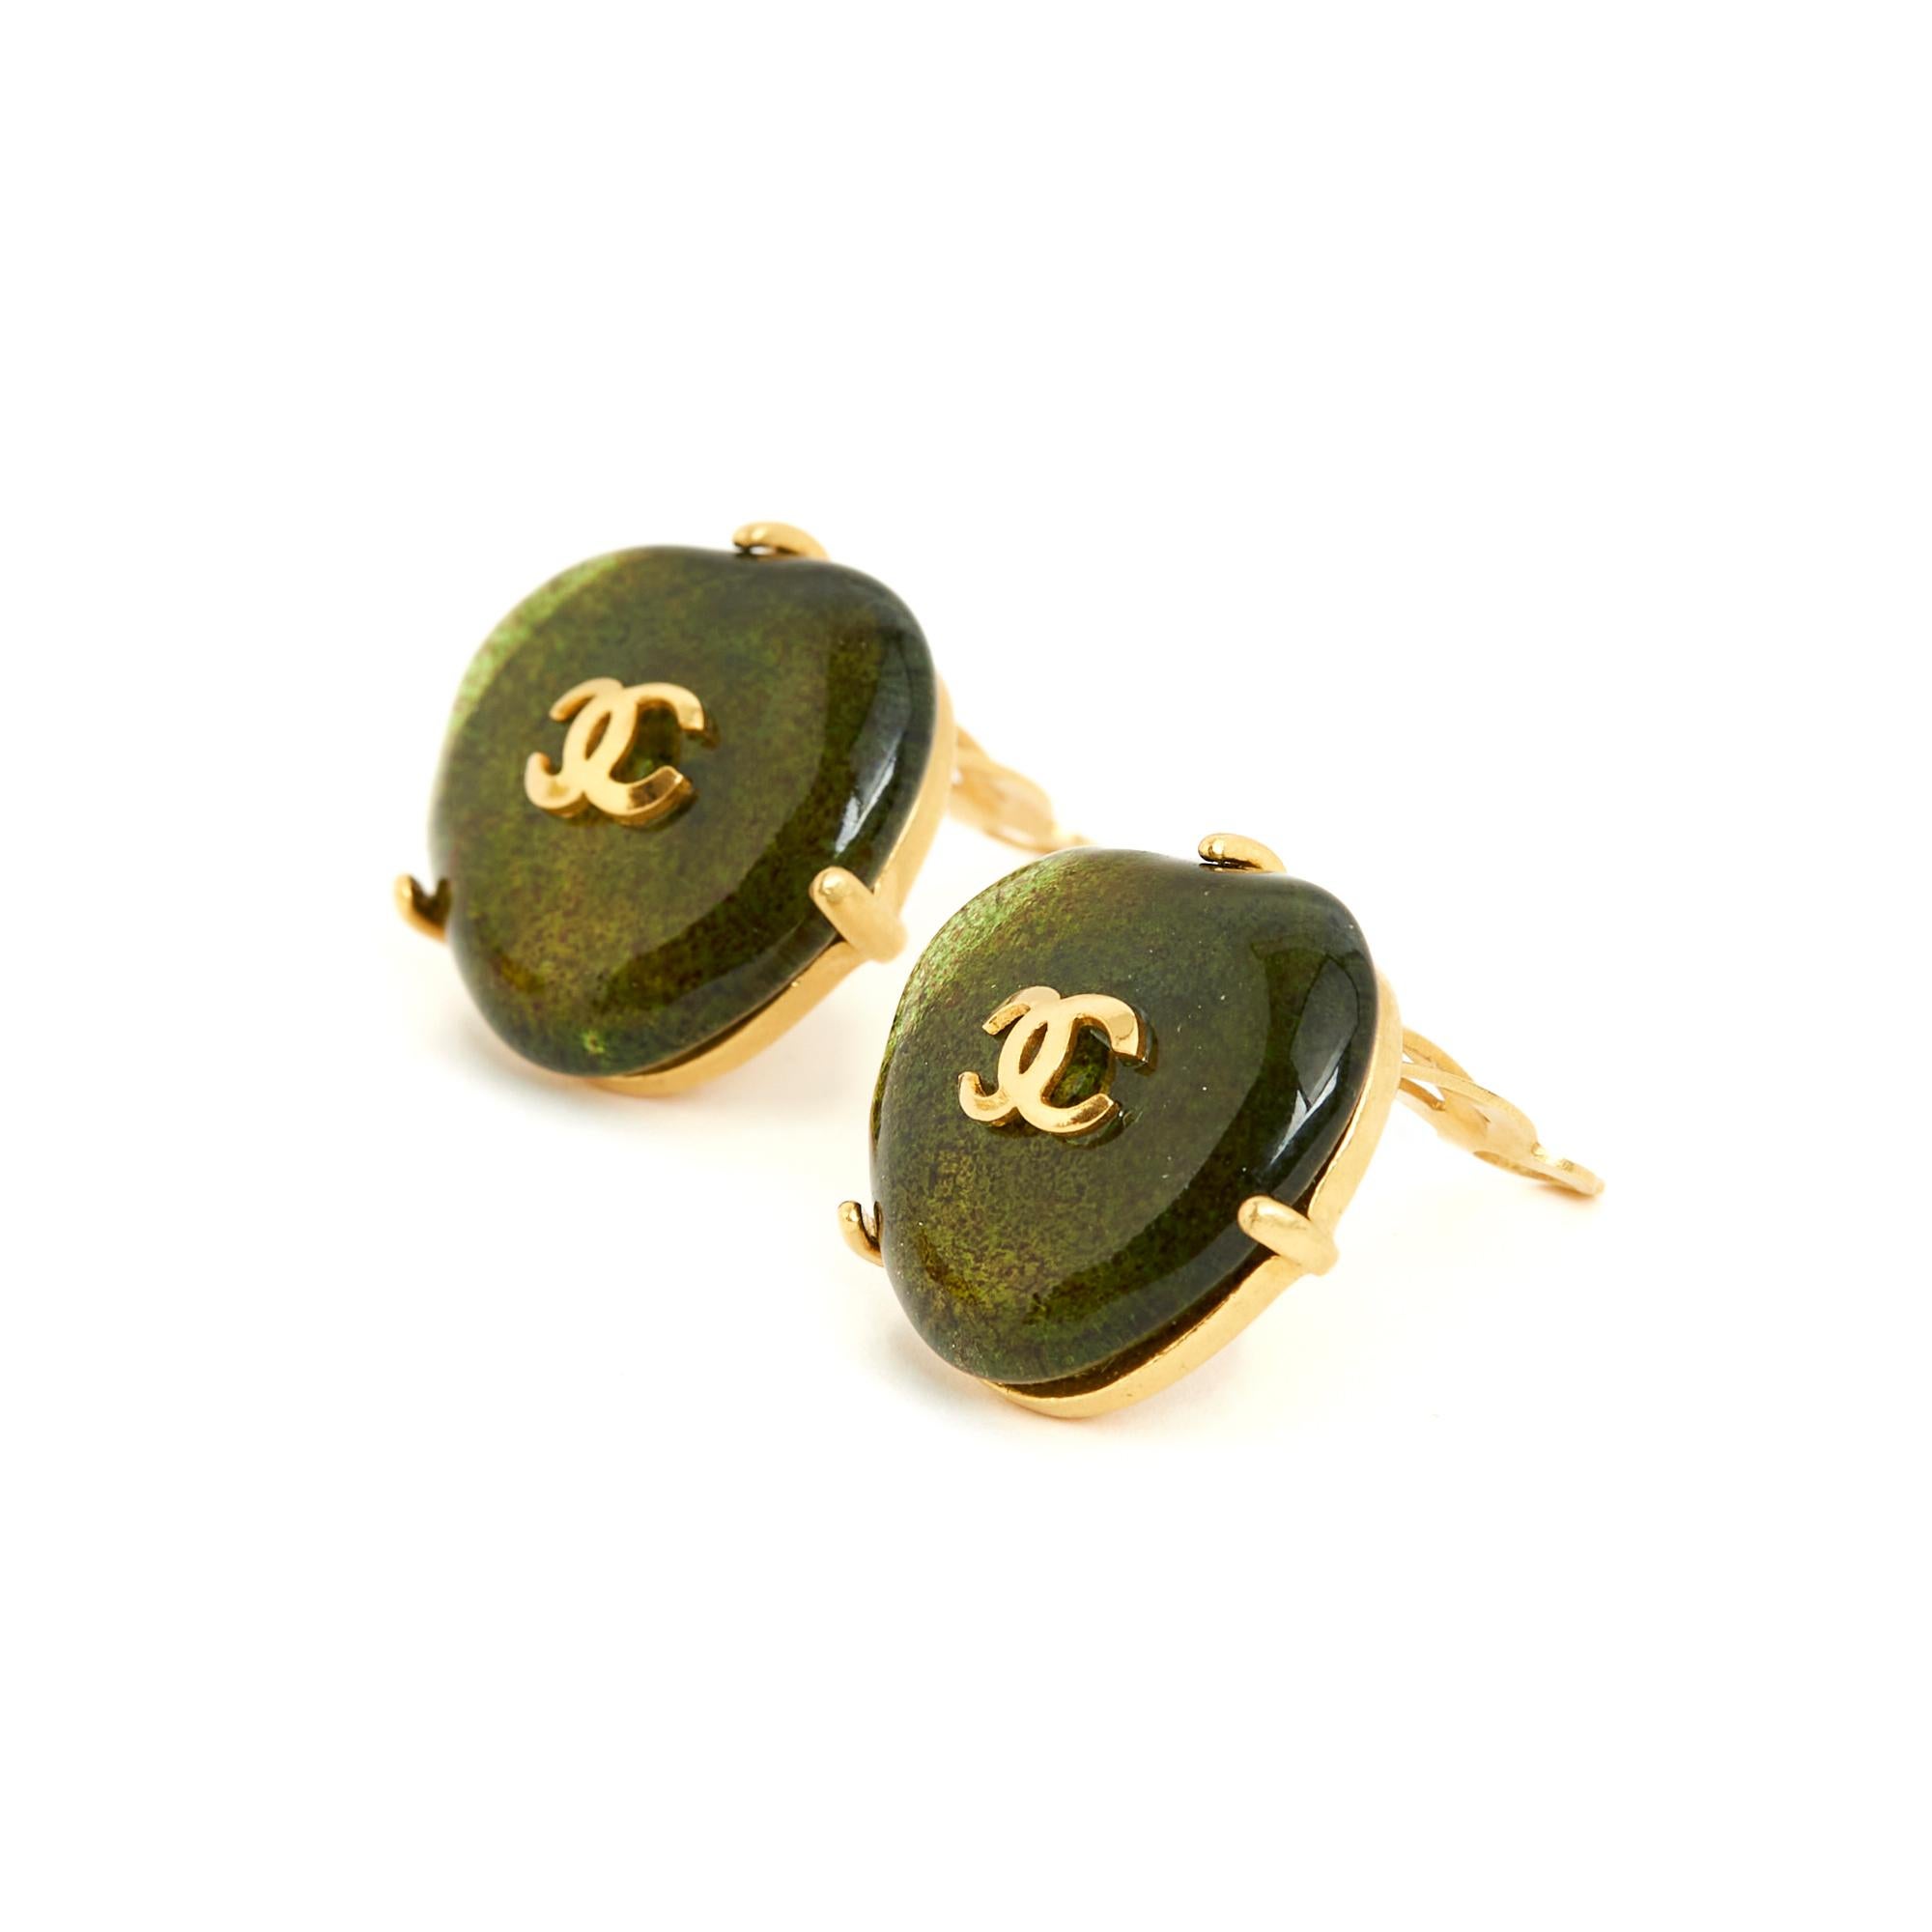 Chanel-Ohrclips aus der Frühjahr/Sommer-Kollektion 1997 von Gripoix aus Glaspaste mit einem kleinen CC-Logo aus vergoldetem Metall. Breite 2,2 cm x Höhe 2,2 cm. Die Ohrringe sind sehr Vintage, sie sind ohne Rechnung oder Originalverpackung